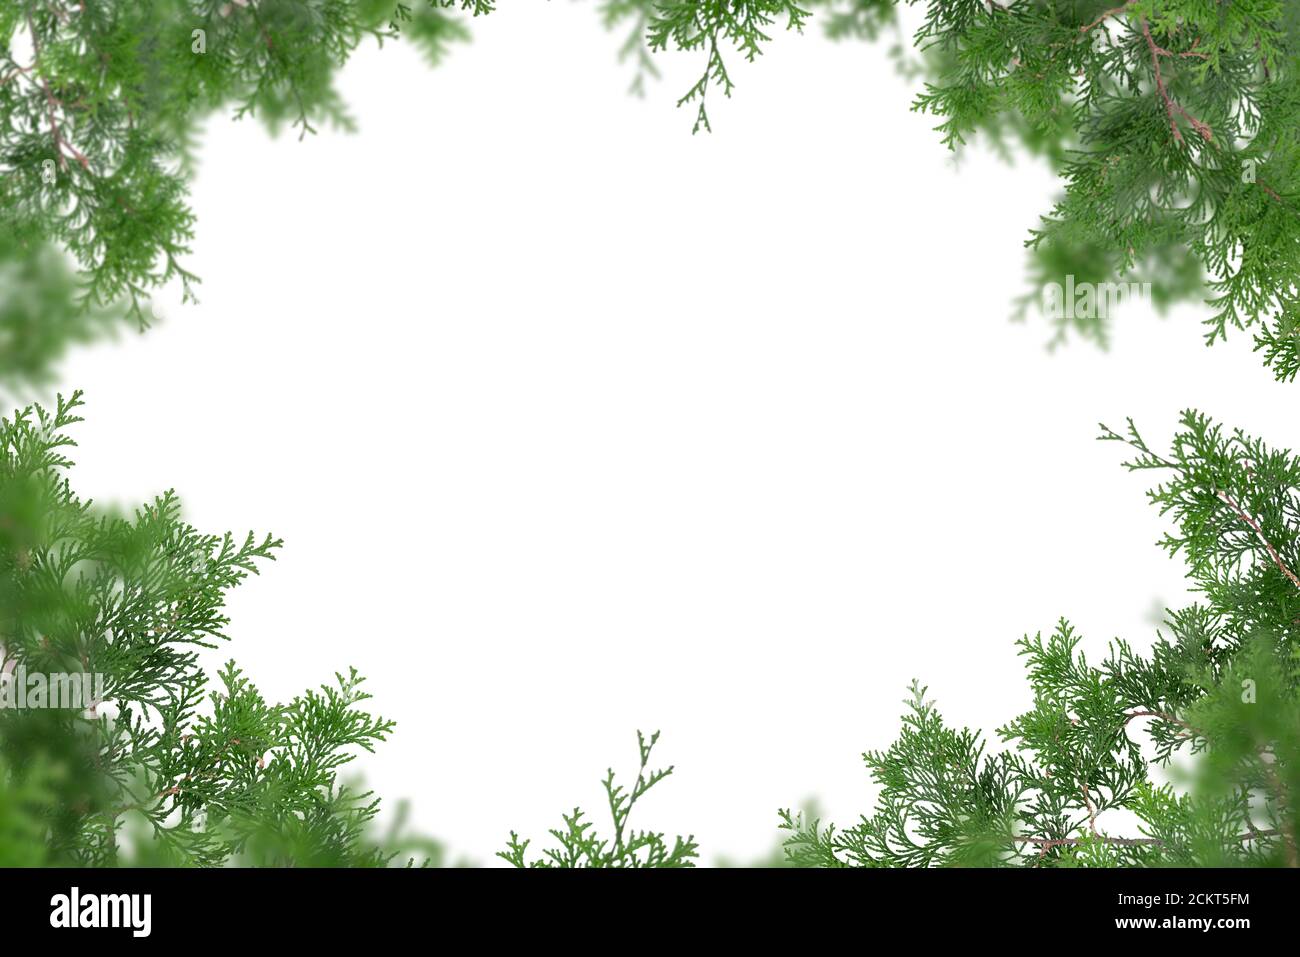 Rami di albero Evergreen isolati su sfondo bianco Foto Stock